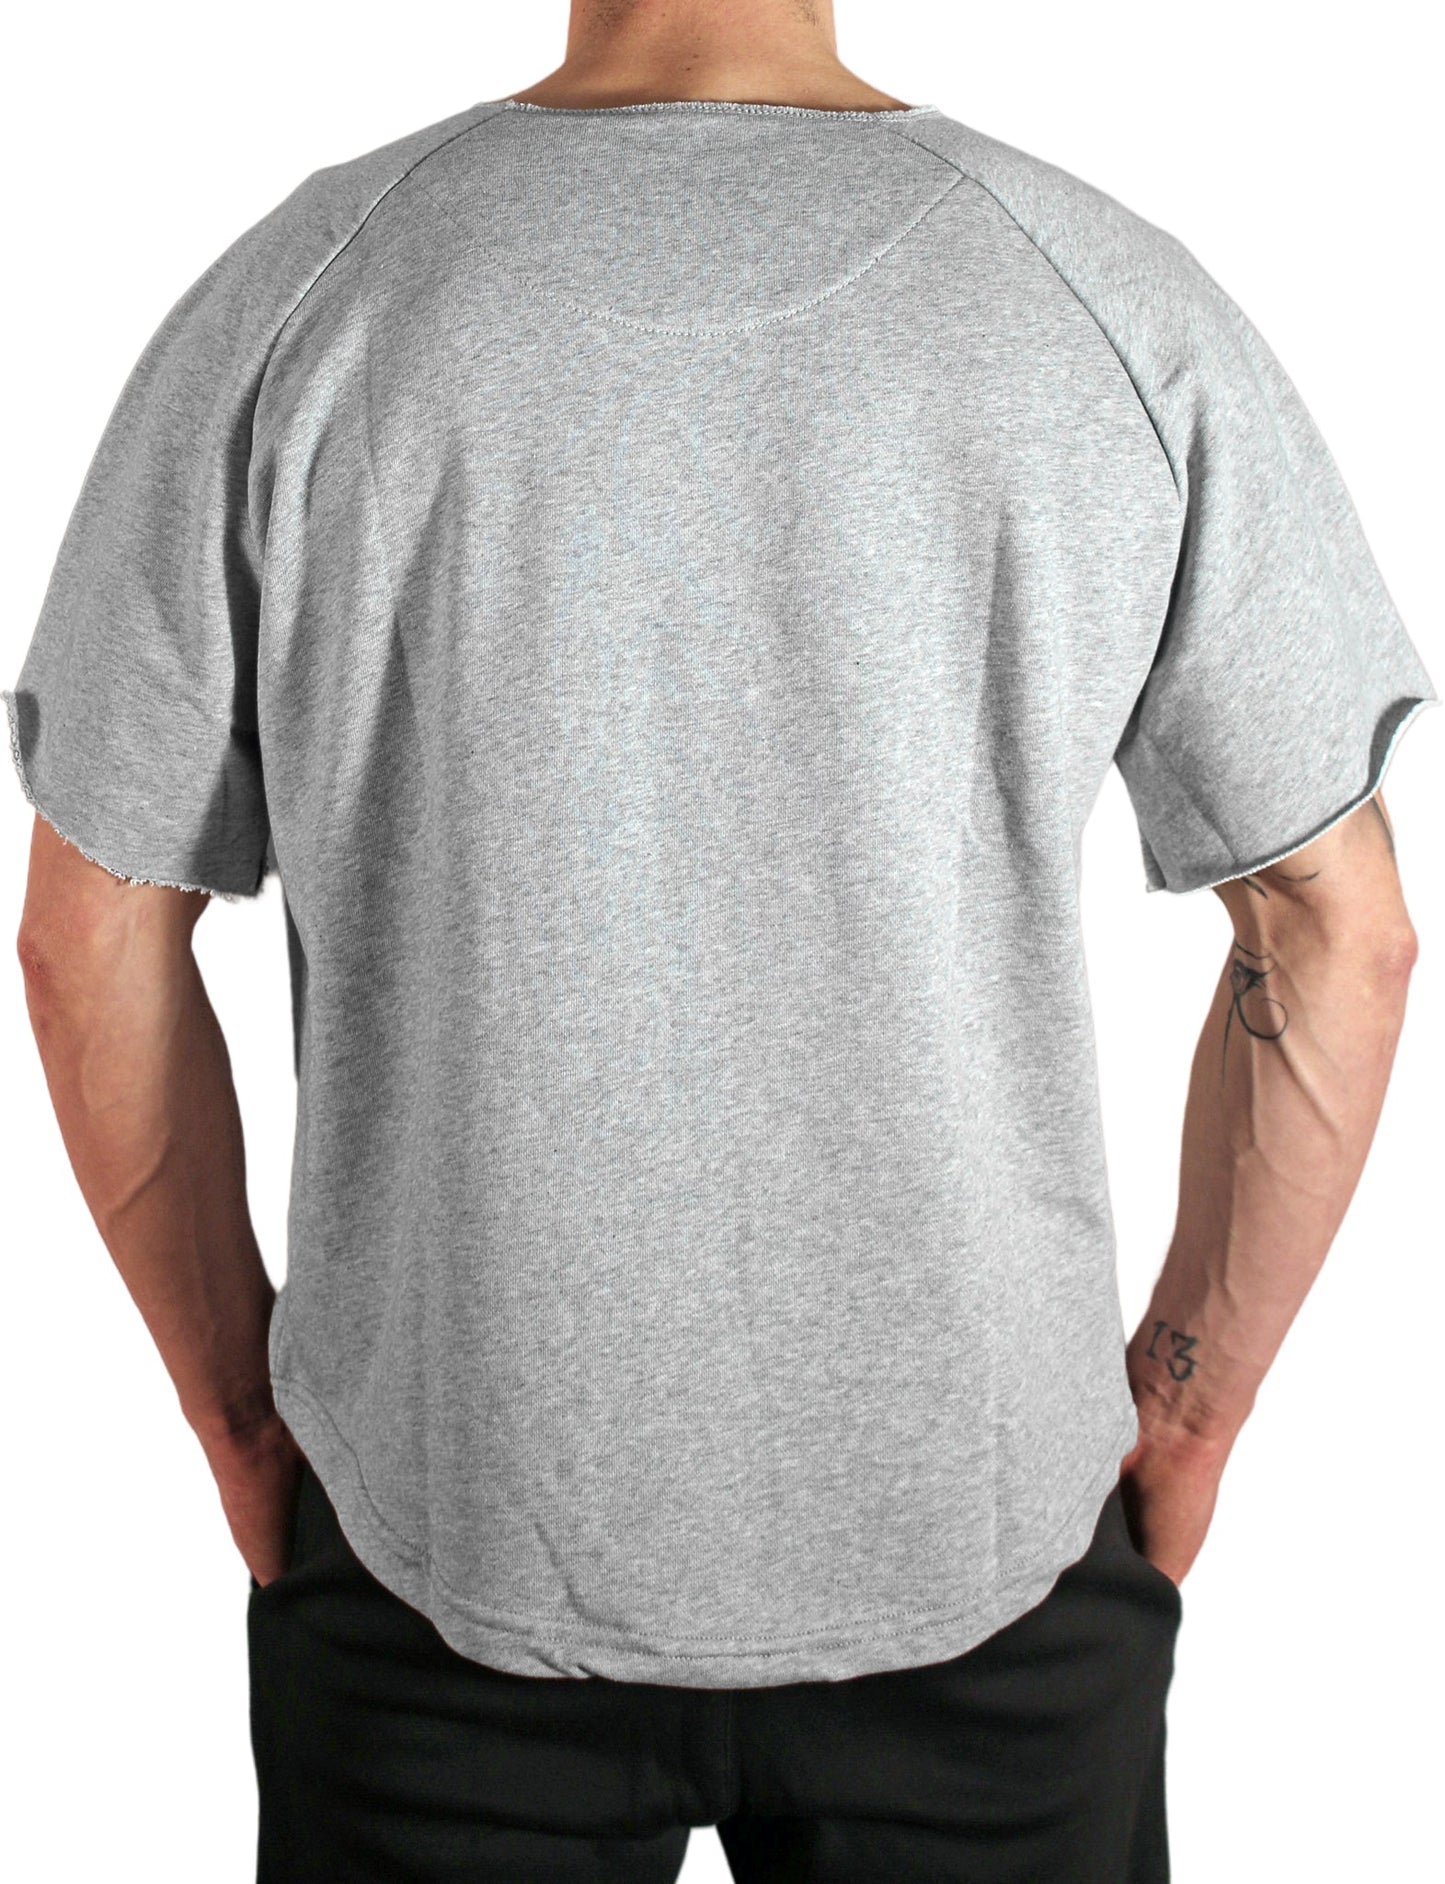 Oversized Pump Cover Shirt - Grau - Gym Generation®-7640171168449-www.gymgeneration.ch